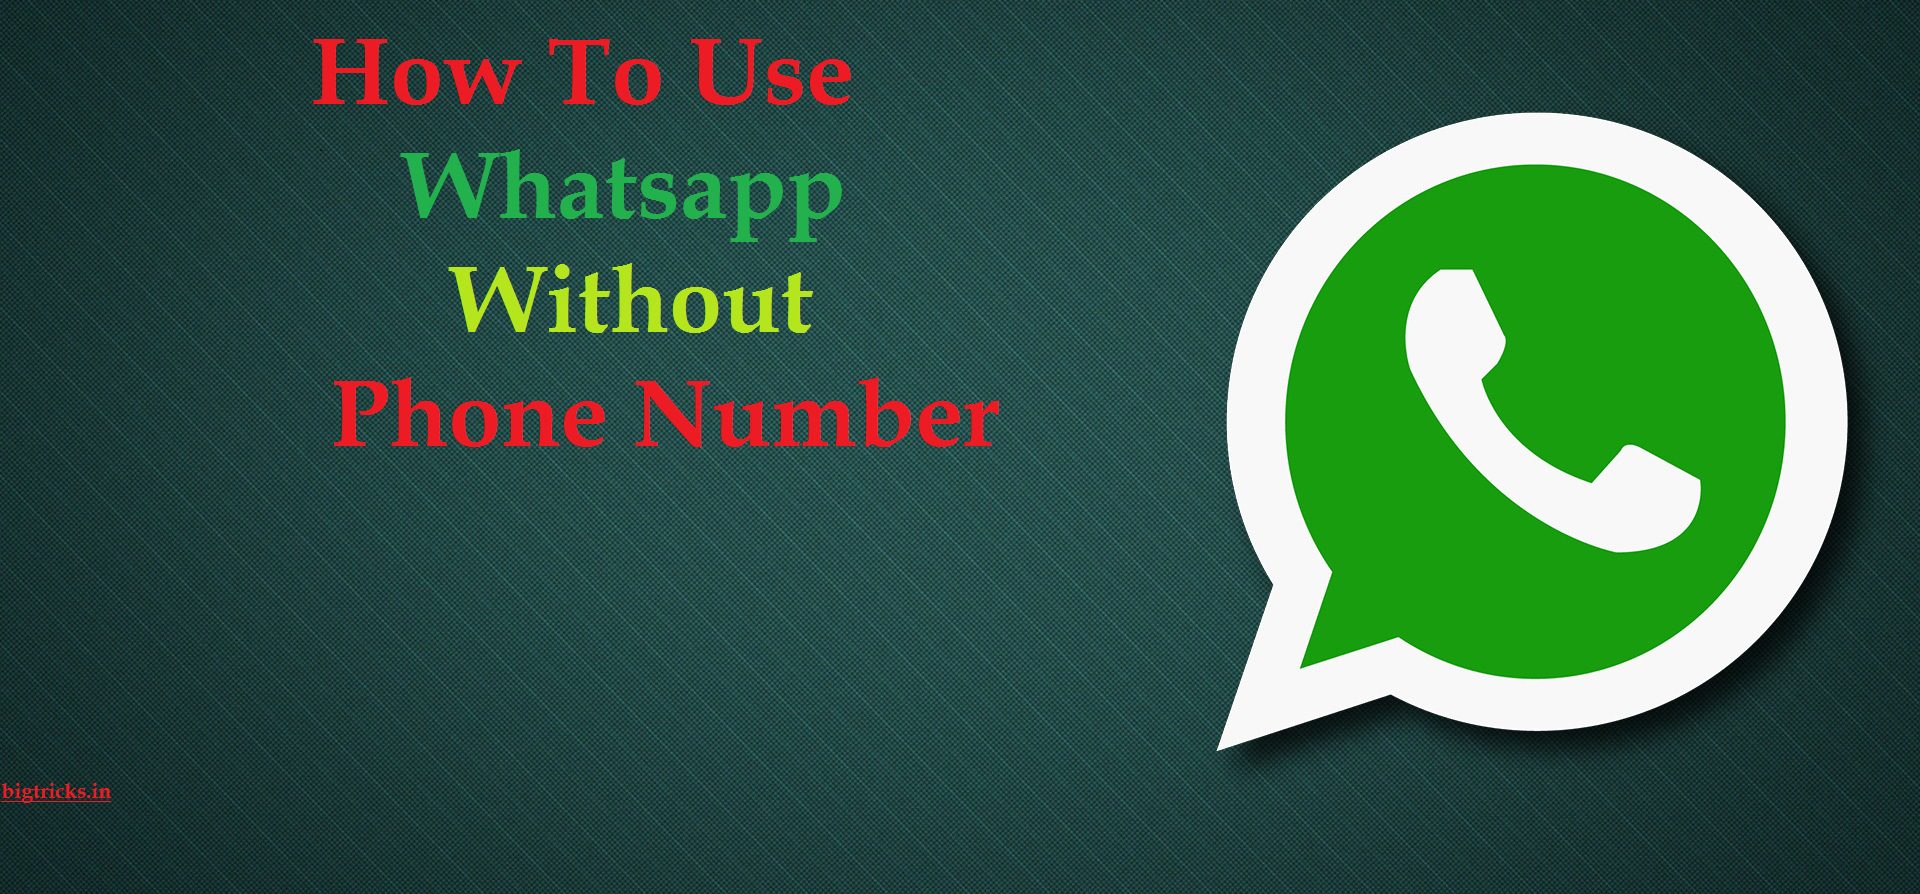 whatsapp-2-12-367-whatsapp-whatsapp-stable